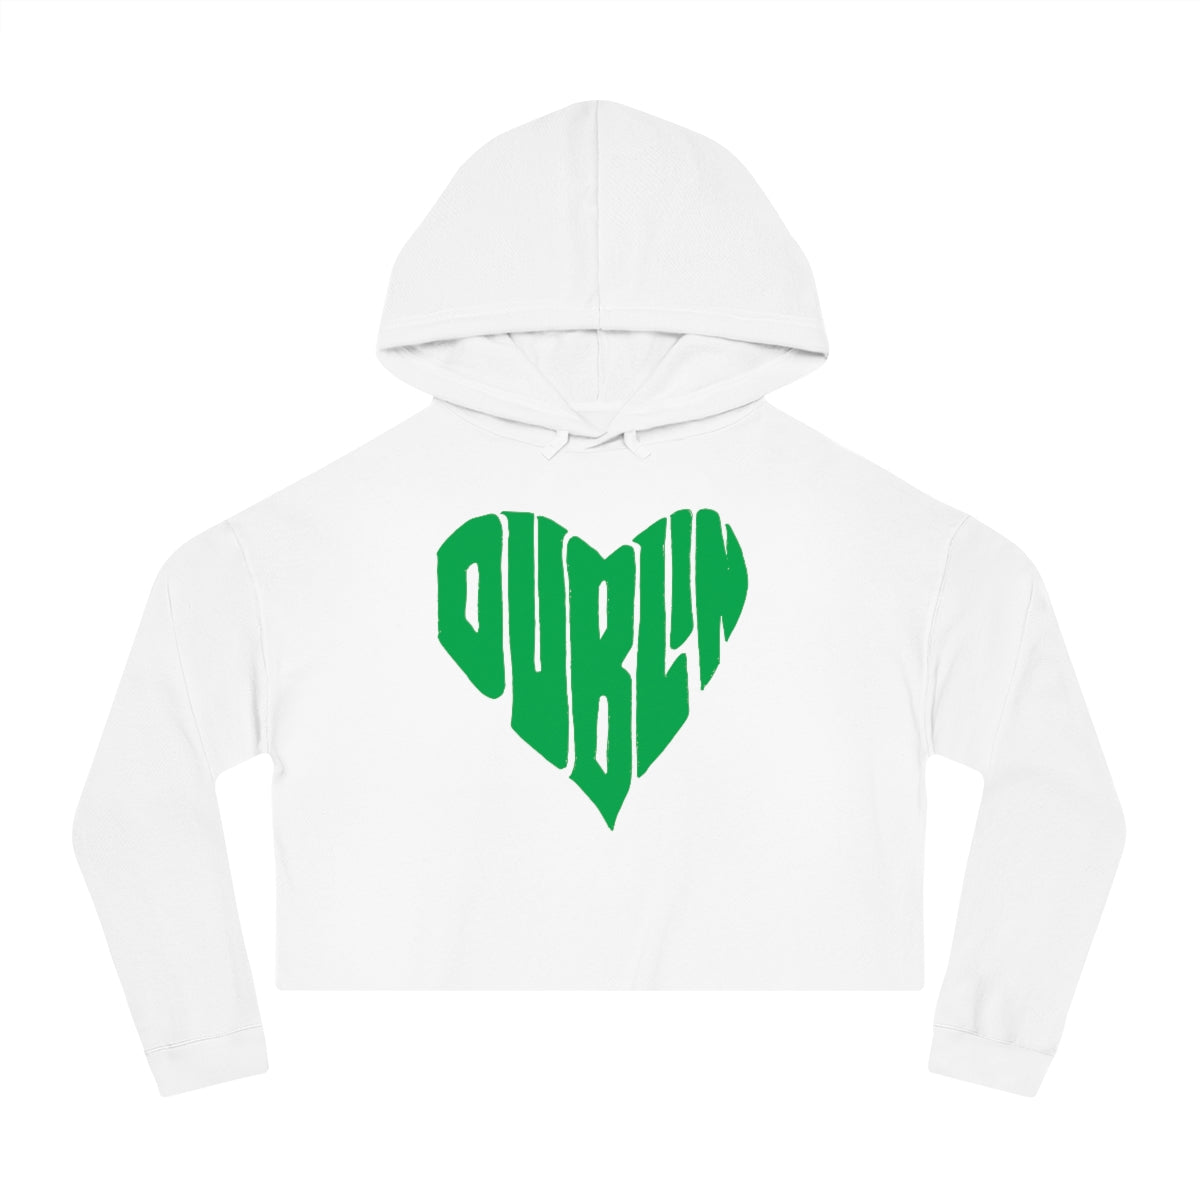 DUBLIN HEART_solid green-Women’s Cropped Hooded Sweatshirt